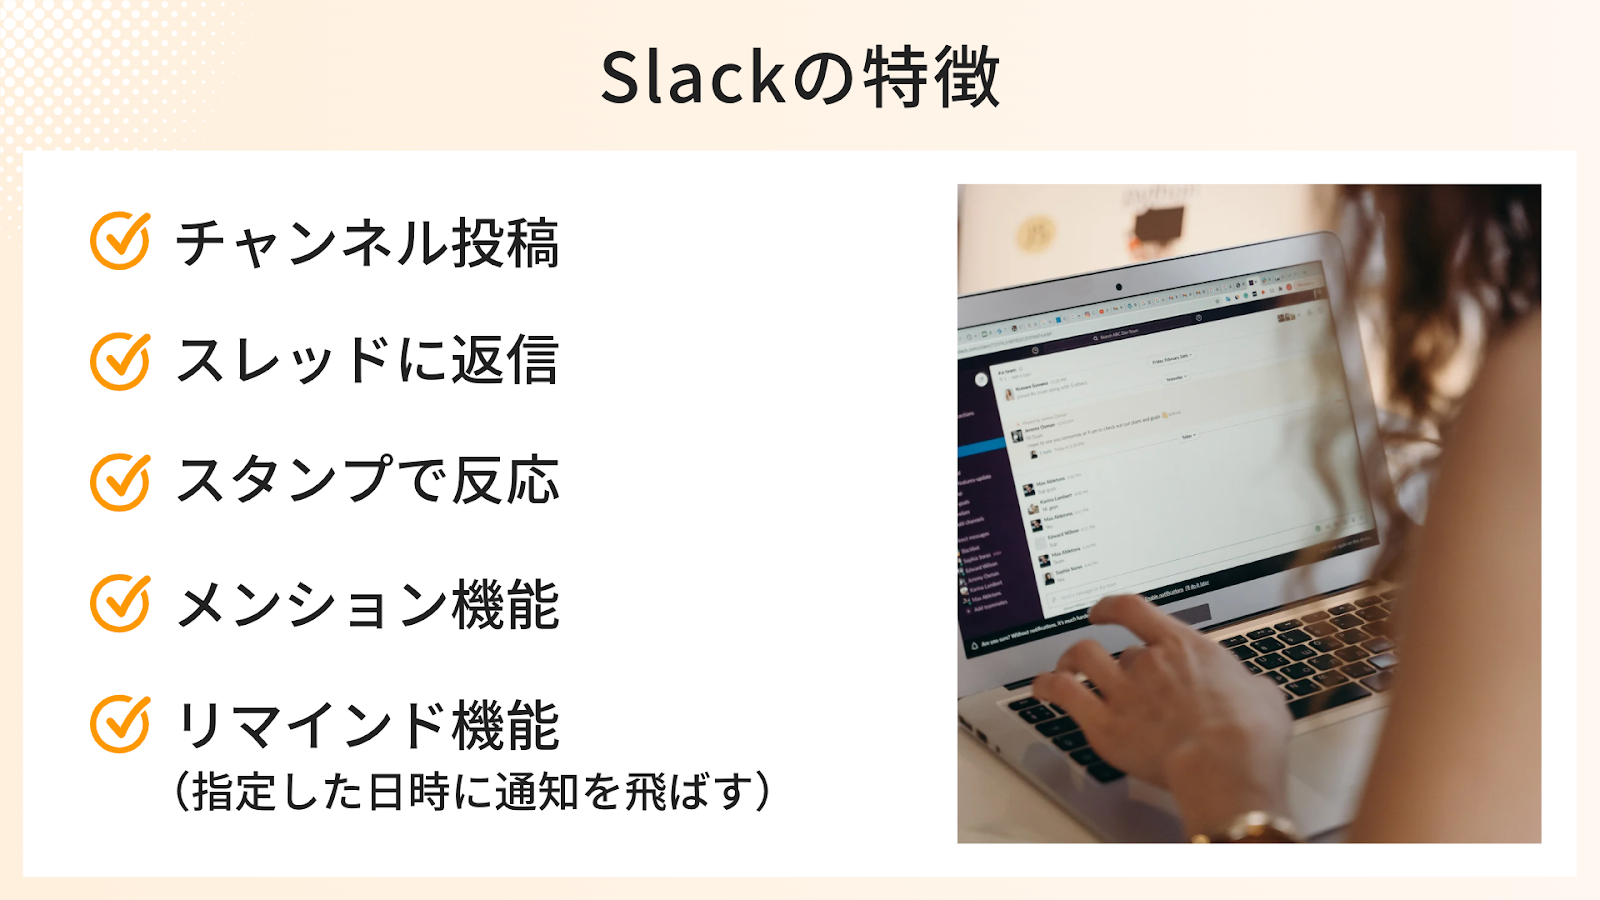 チャットツール「Slack」の特徴